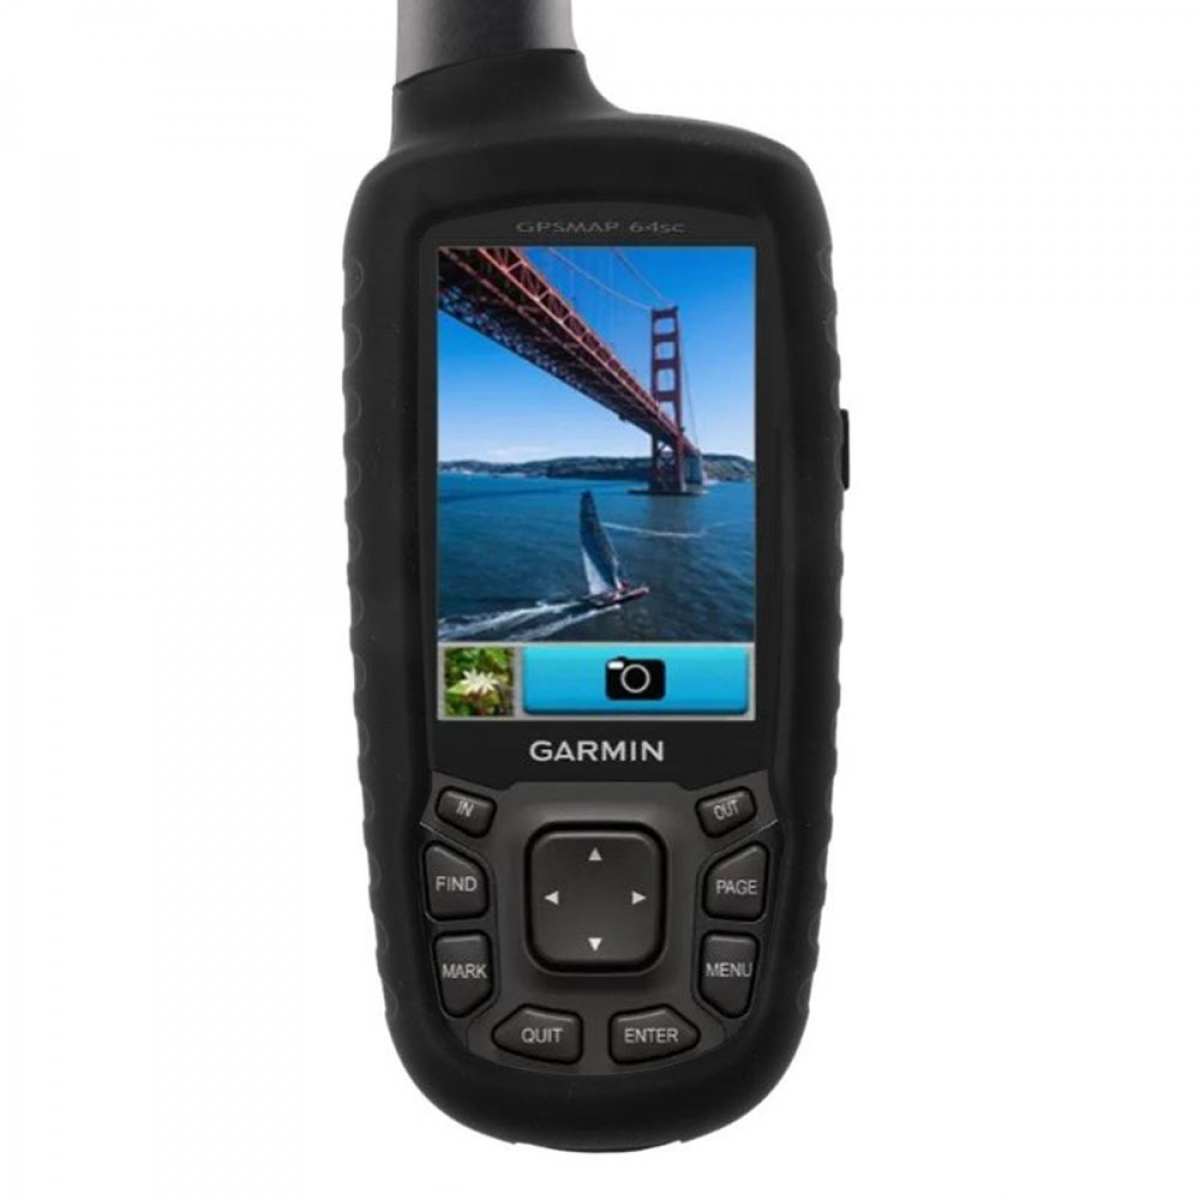 GPSMAP Garmin, 64sc, CASEONLINE Schwarz GPS, Backcover,